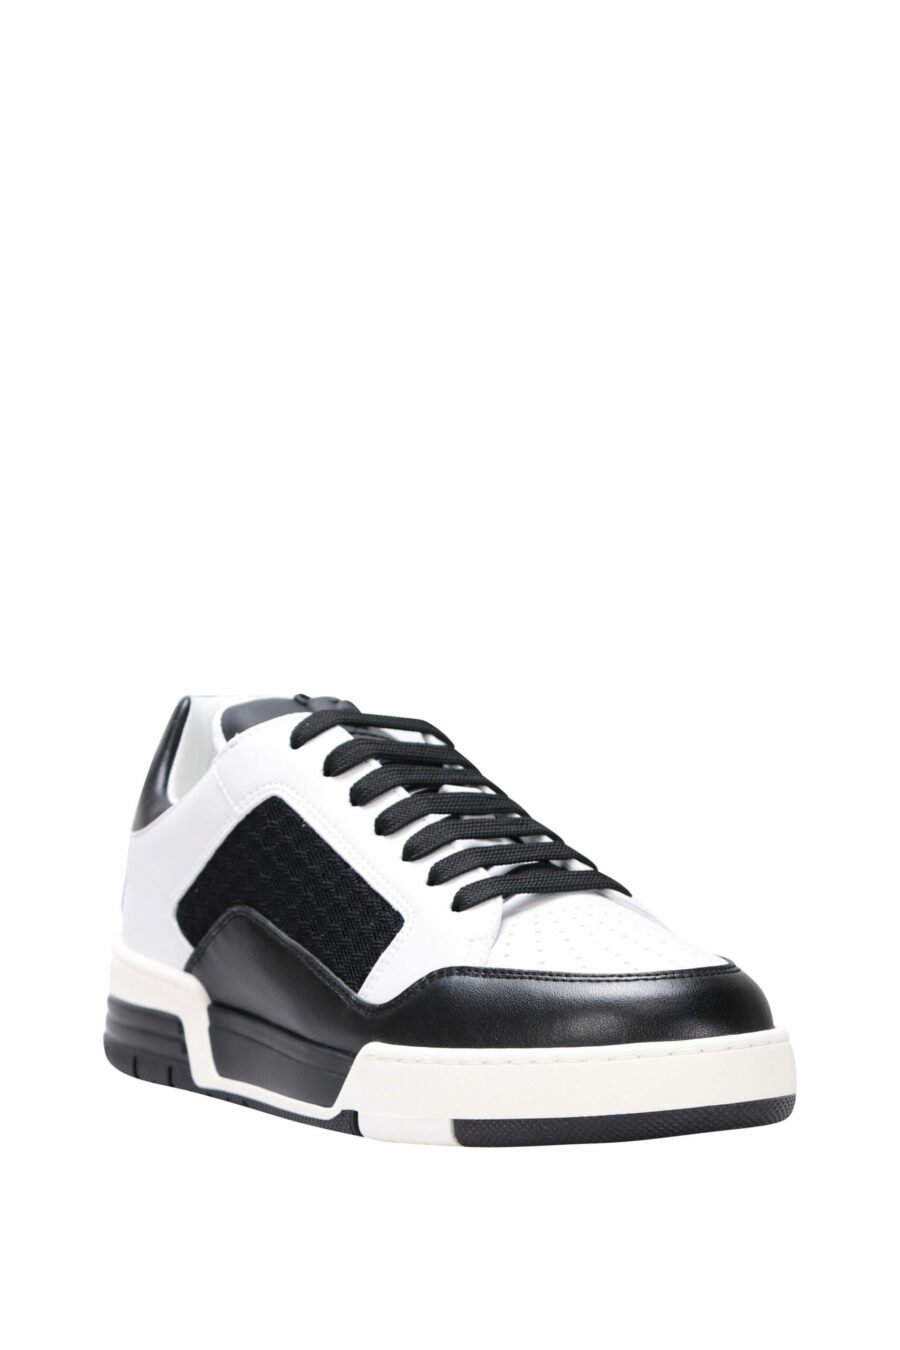 Chaussures bicolores noires et blanches "kevin40" avec mini-logo - 8054388024457 1 à l'échelle